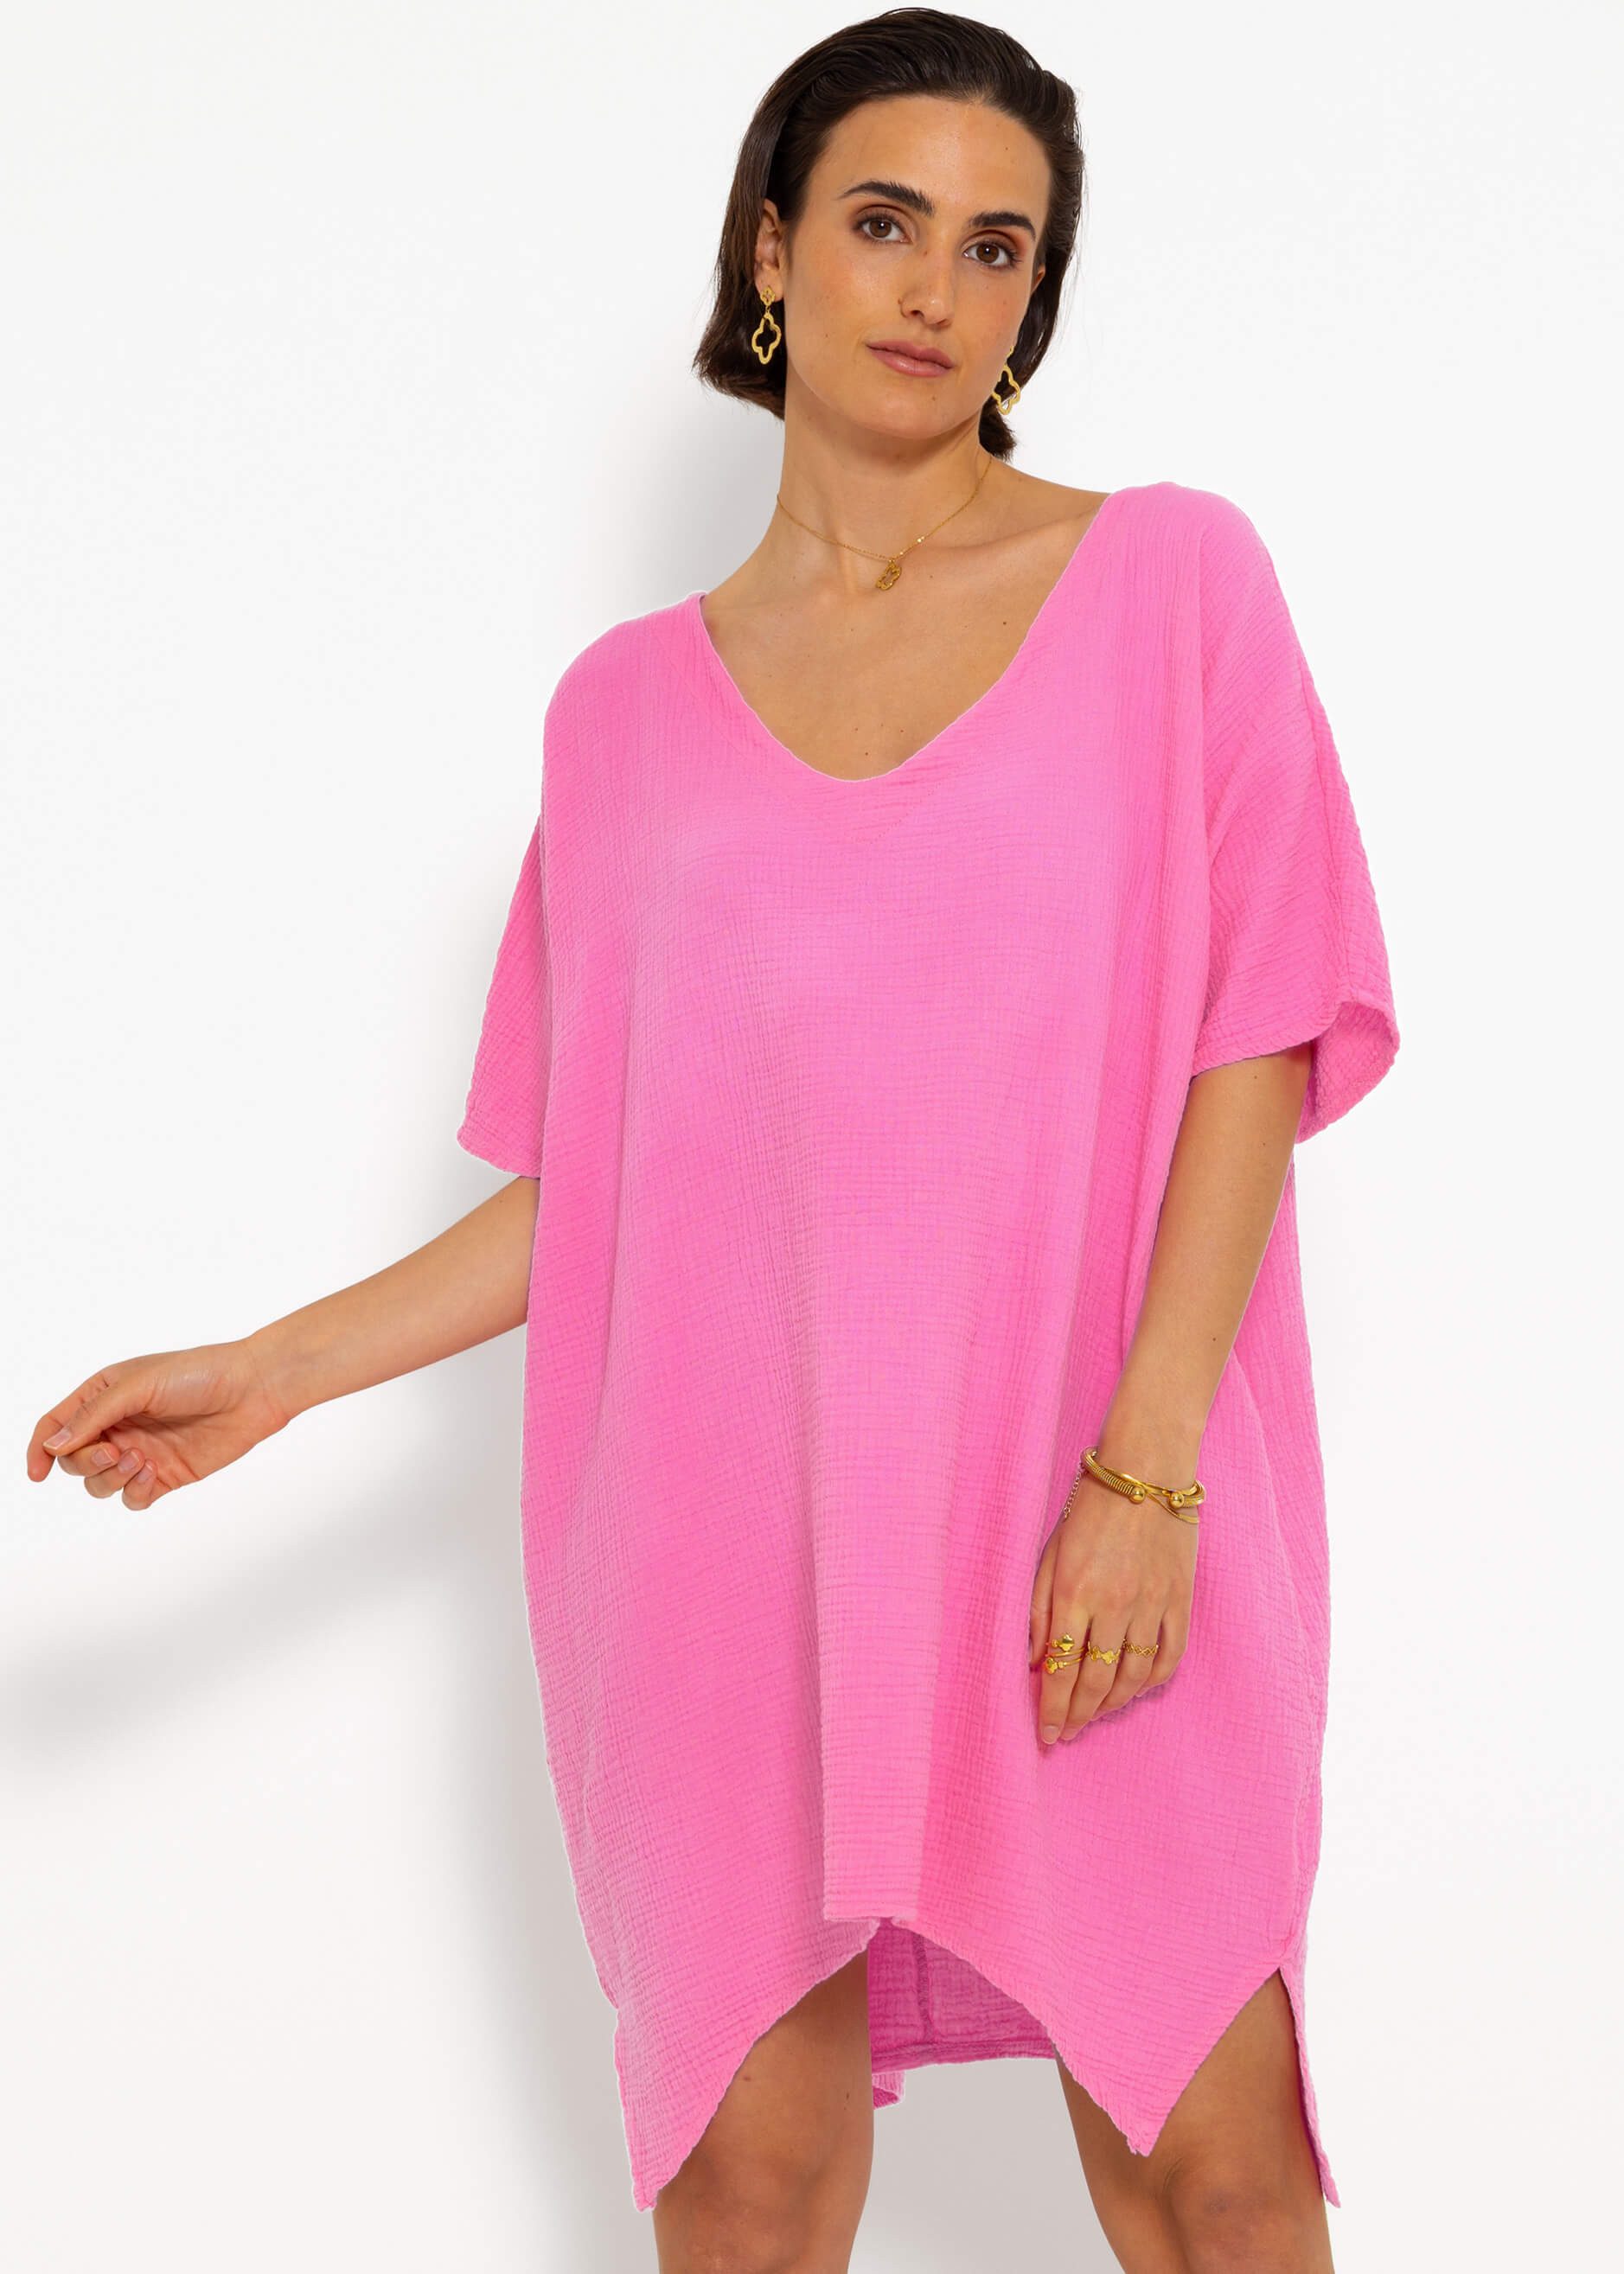 SASSYCLASSY Strandkleid Musselin Tunika mit V-Ausschnitt 100 % Baumwoll Kleid mit Seitenschlitzen und einer Oversize Passform